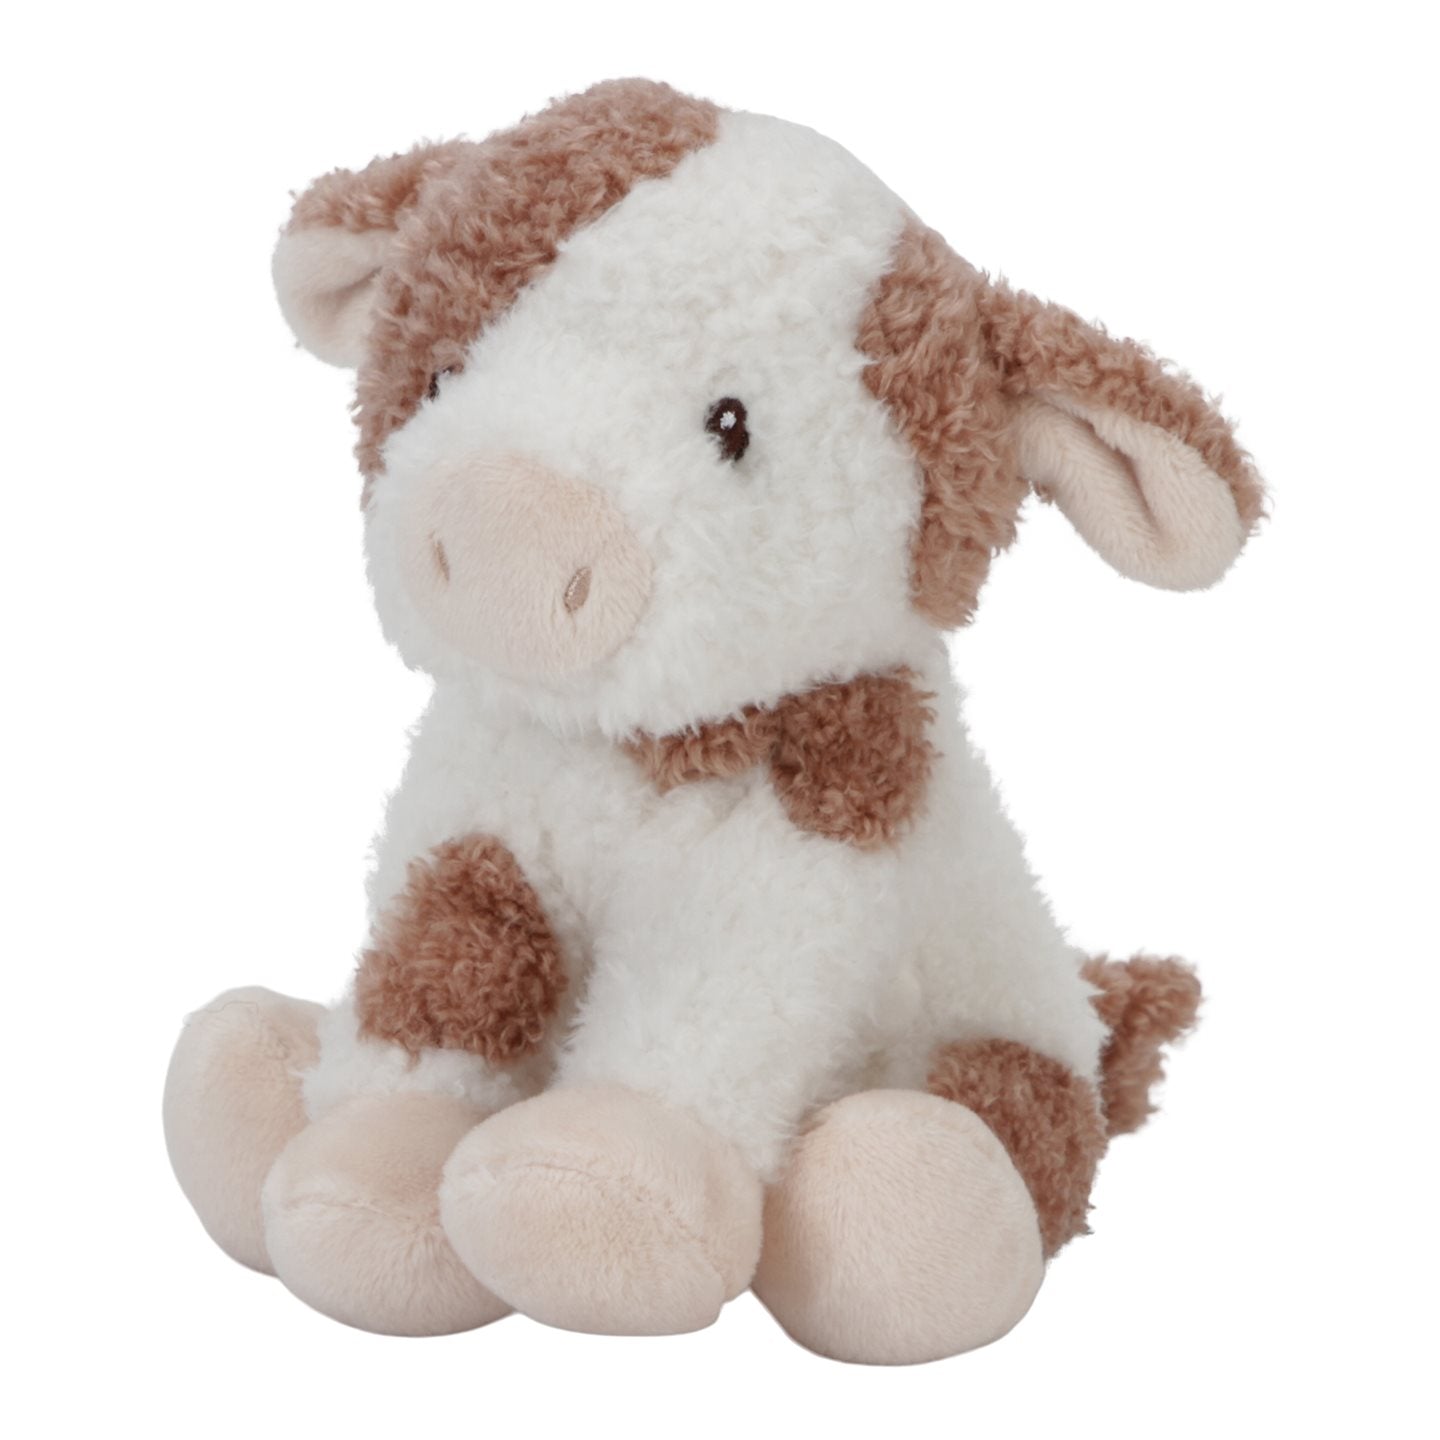 Produktbild: Little Dutch - Kuscheltier Kuh 25cm Little Farm von little dutch im Onlineshop von dasMikruli - Dein Shop für Baby Erstausstattung